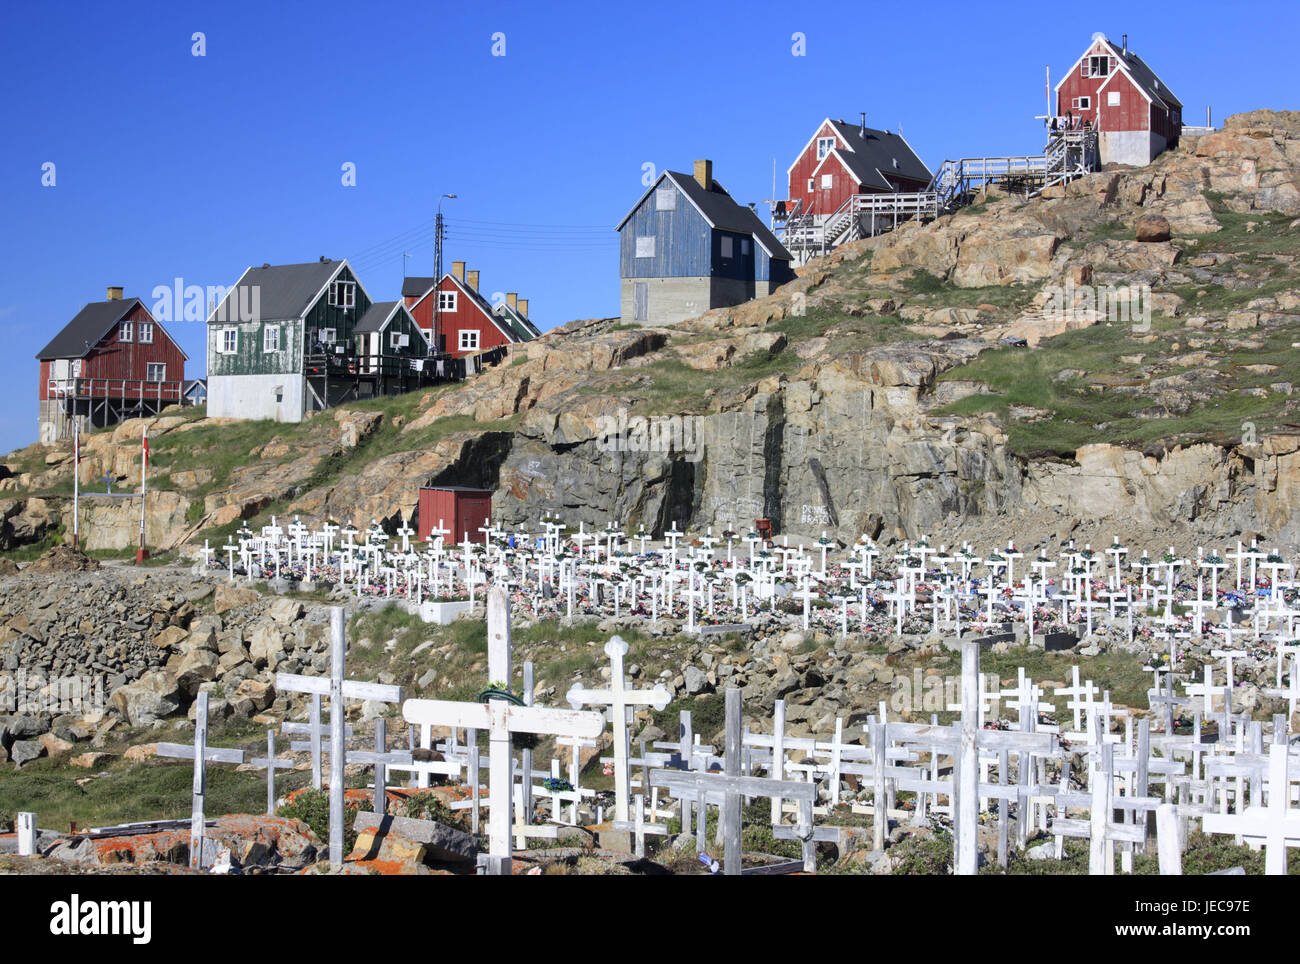 La Groenlandia, Upernavik, case, bile costa, cimitero, nel nord-ovest della Groenlandia, costa, paesaggi costieri, tombe, croci, la fede, la religione, il cristianesimo, morte, speranza, il dolore, deserte, rocce, case in legno, case residenziali, Foto Stock